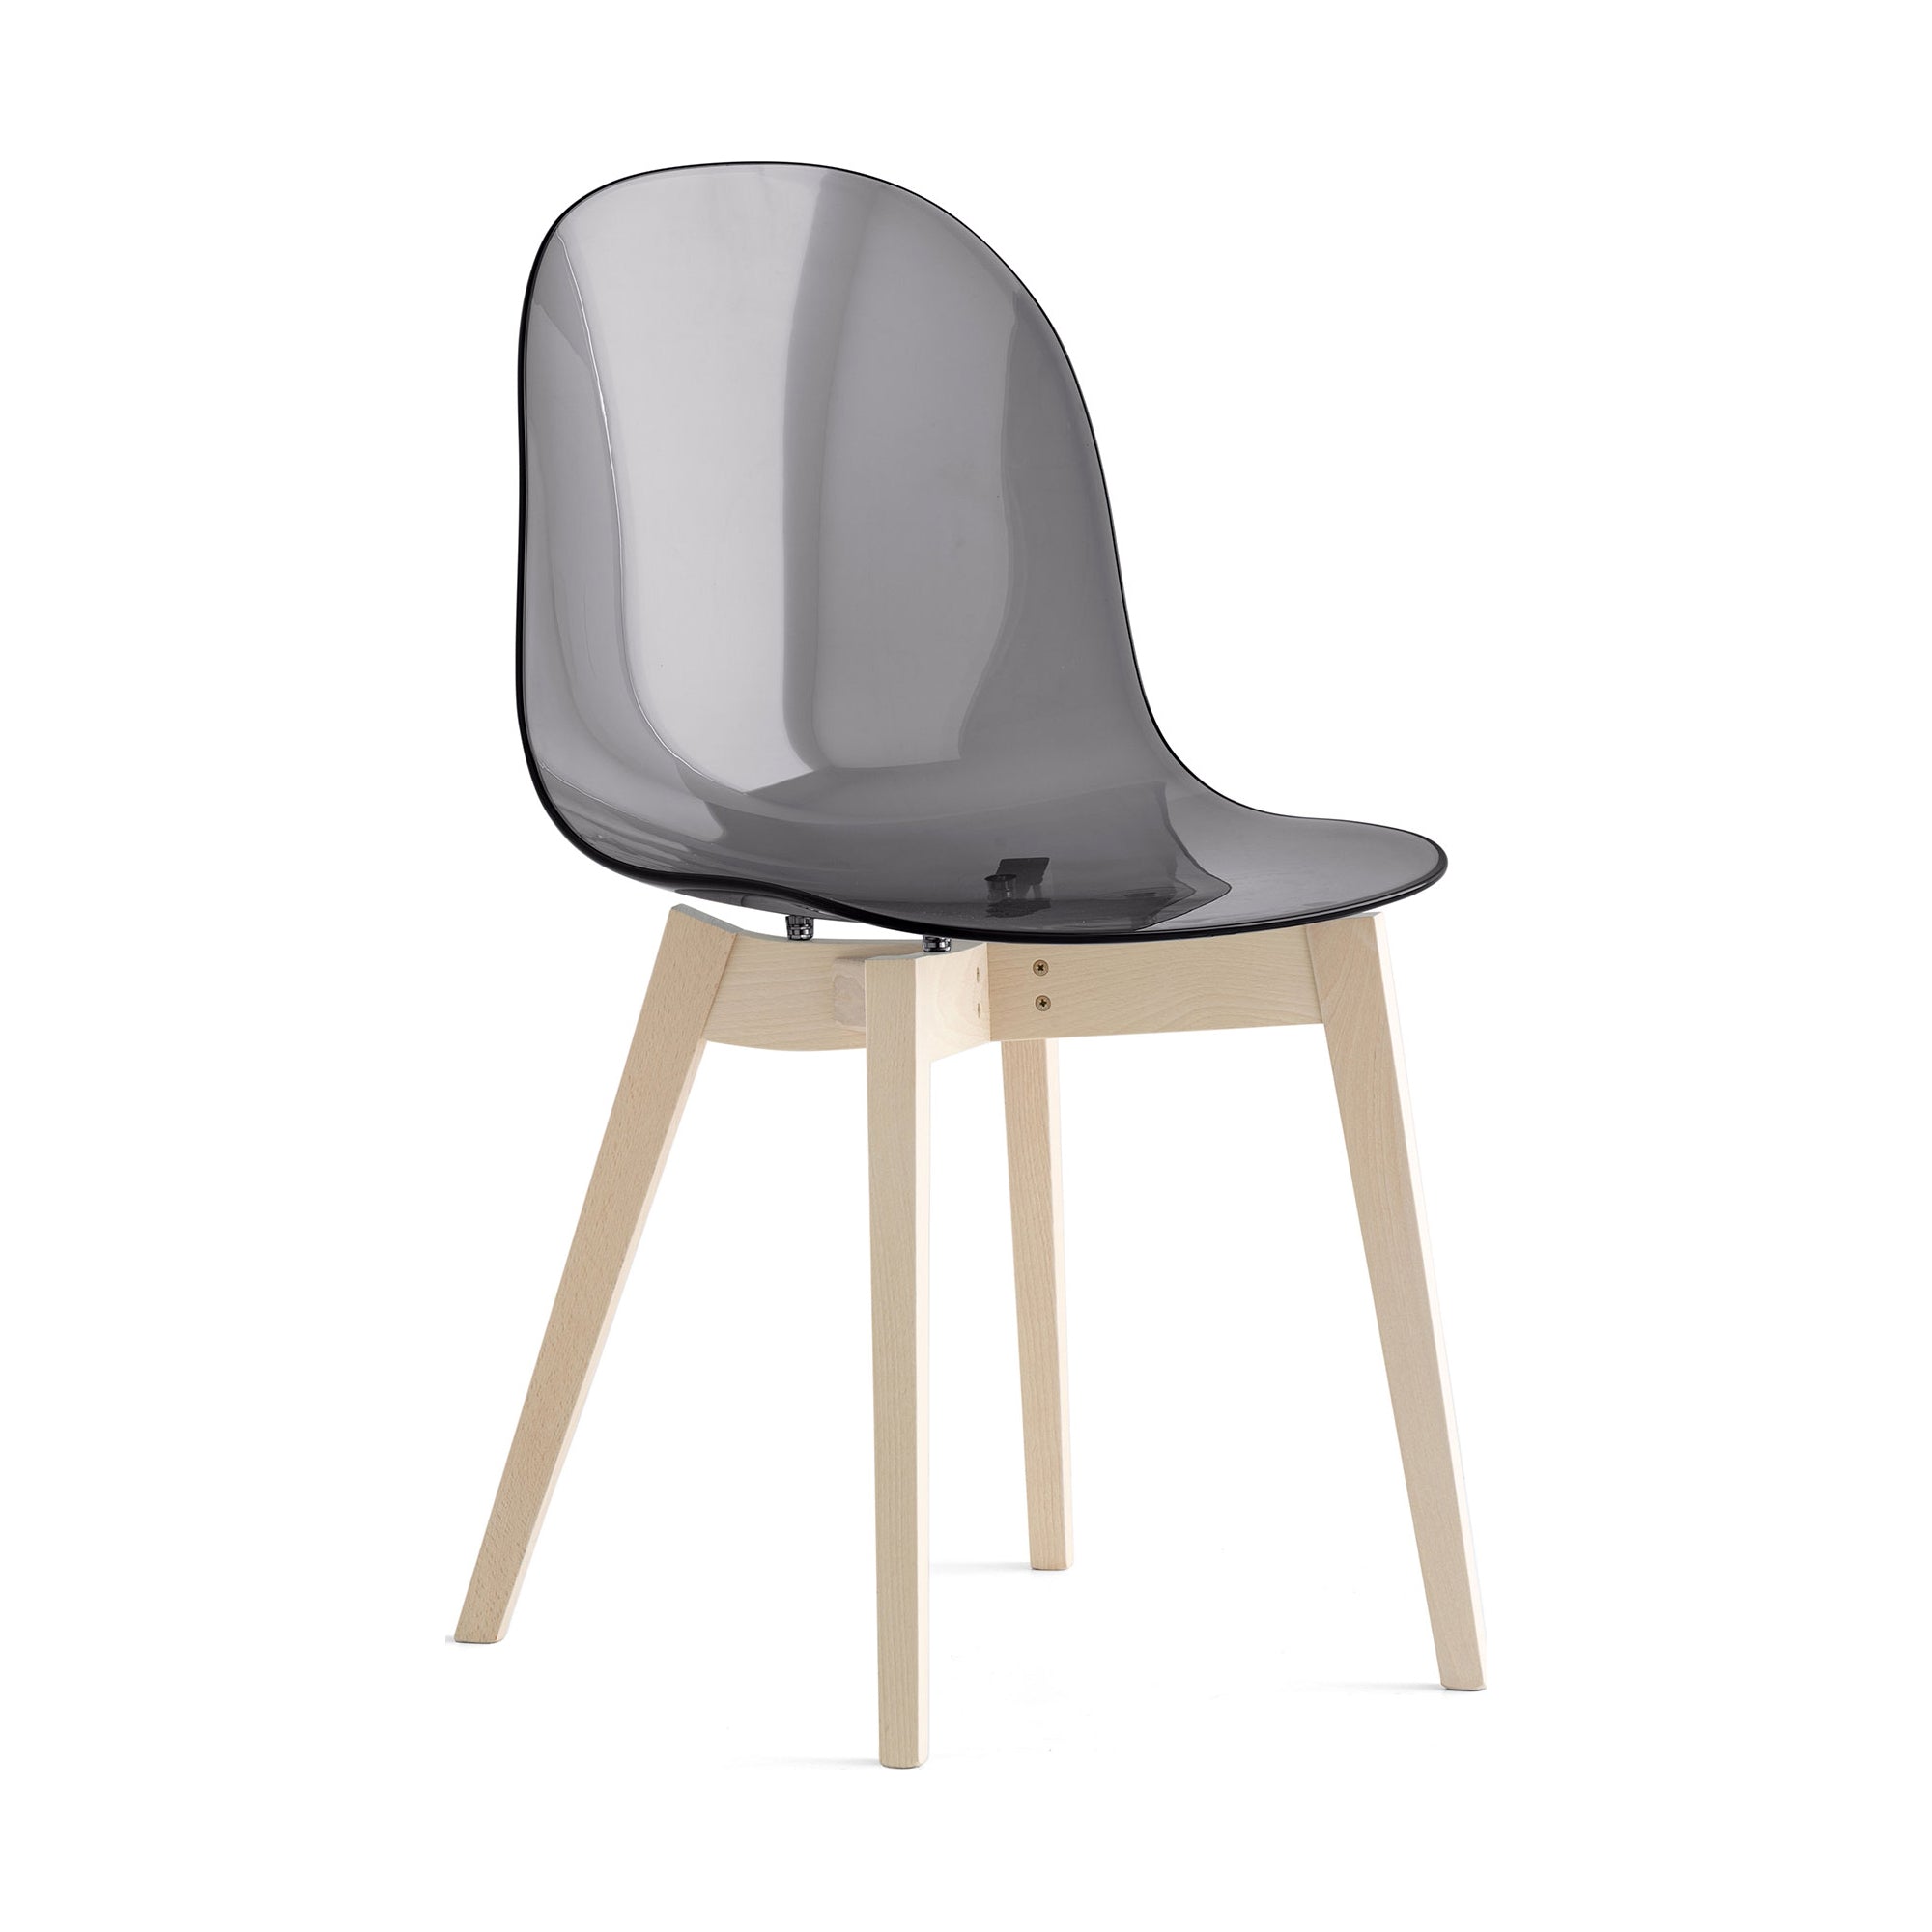 Chair - - Connubia Leg 2Modern Academy 4 Base Solid Wood